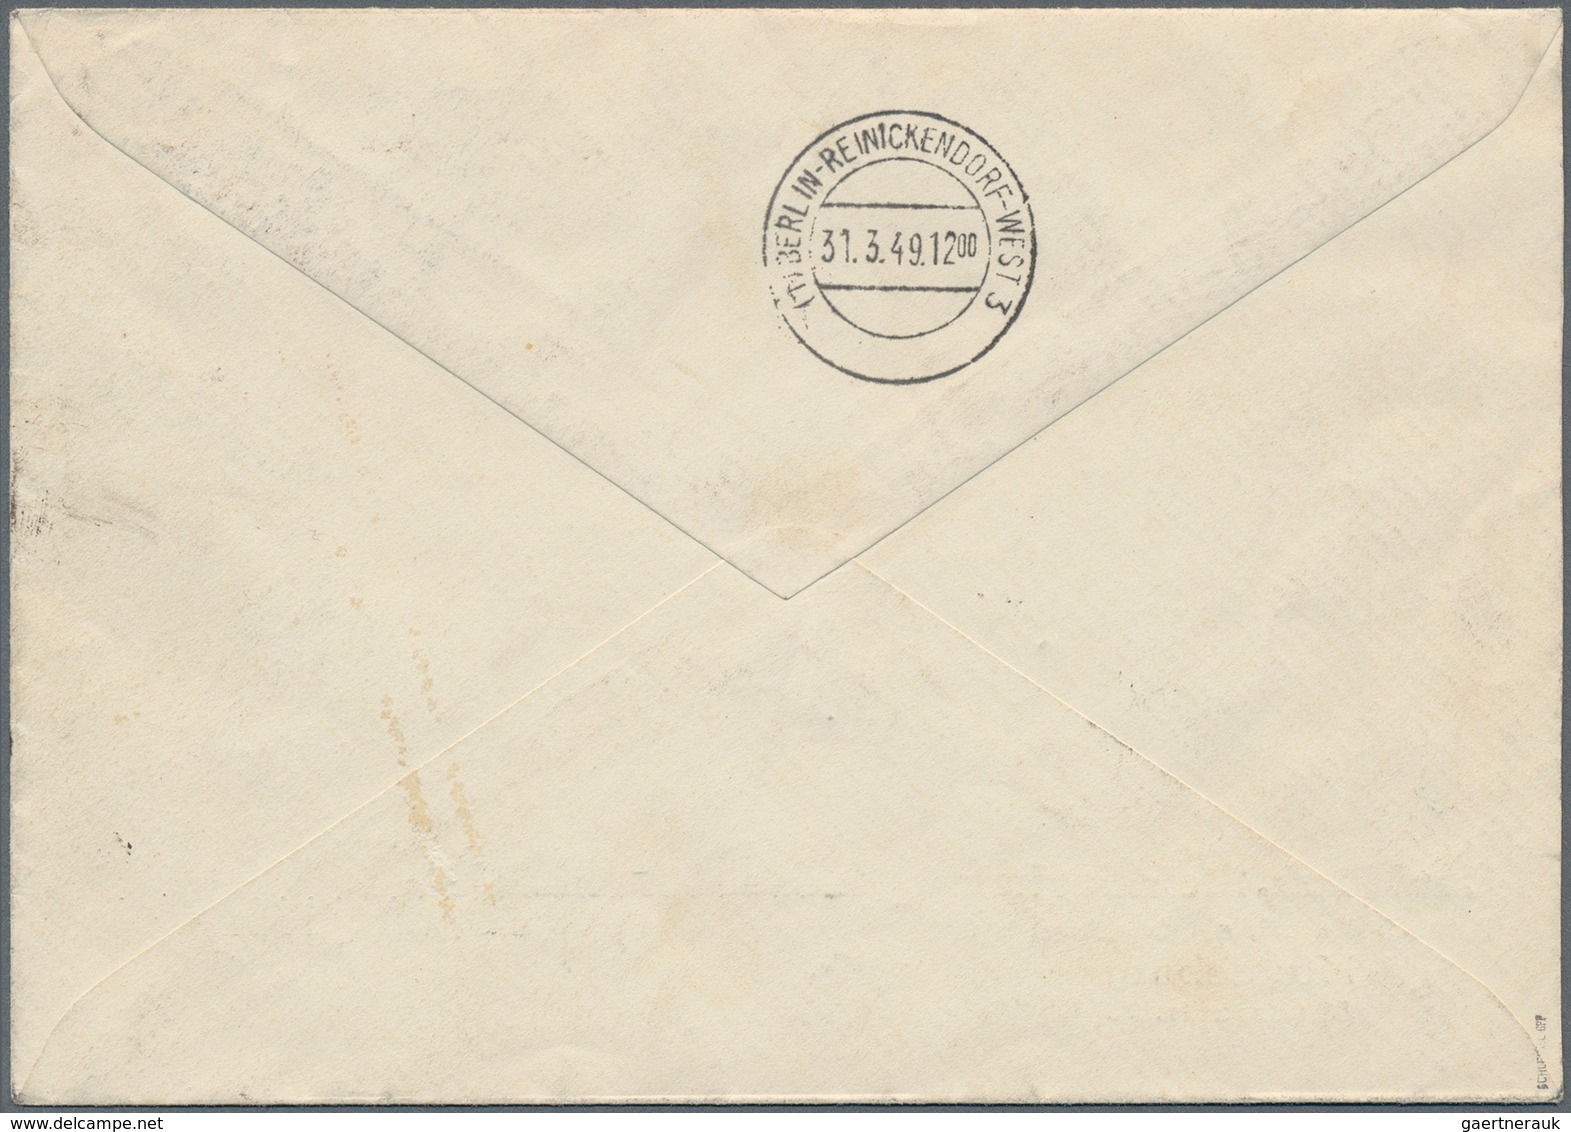 Berlin - Postschnelldienst: Senkr. 5er Streifen 16 U. 24 Pf. Schwarzaufdruck Zusammen Auf Postschnel - Covers & Documents